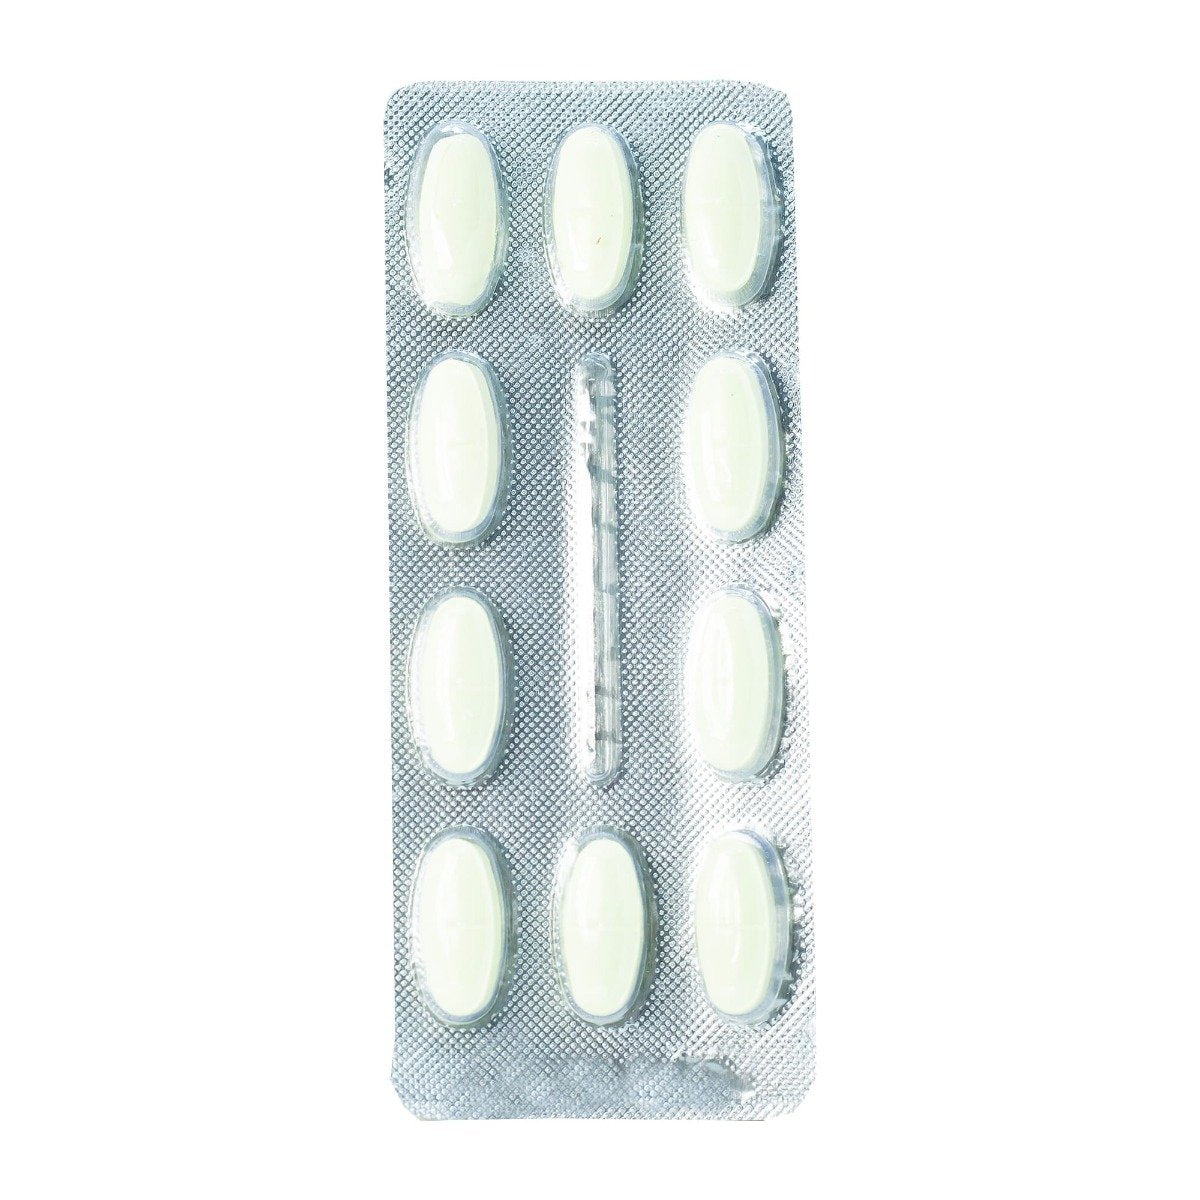 Isoptin SR 240 mg - 30 Tablets - Bloom Pharmacy